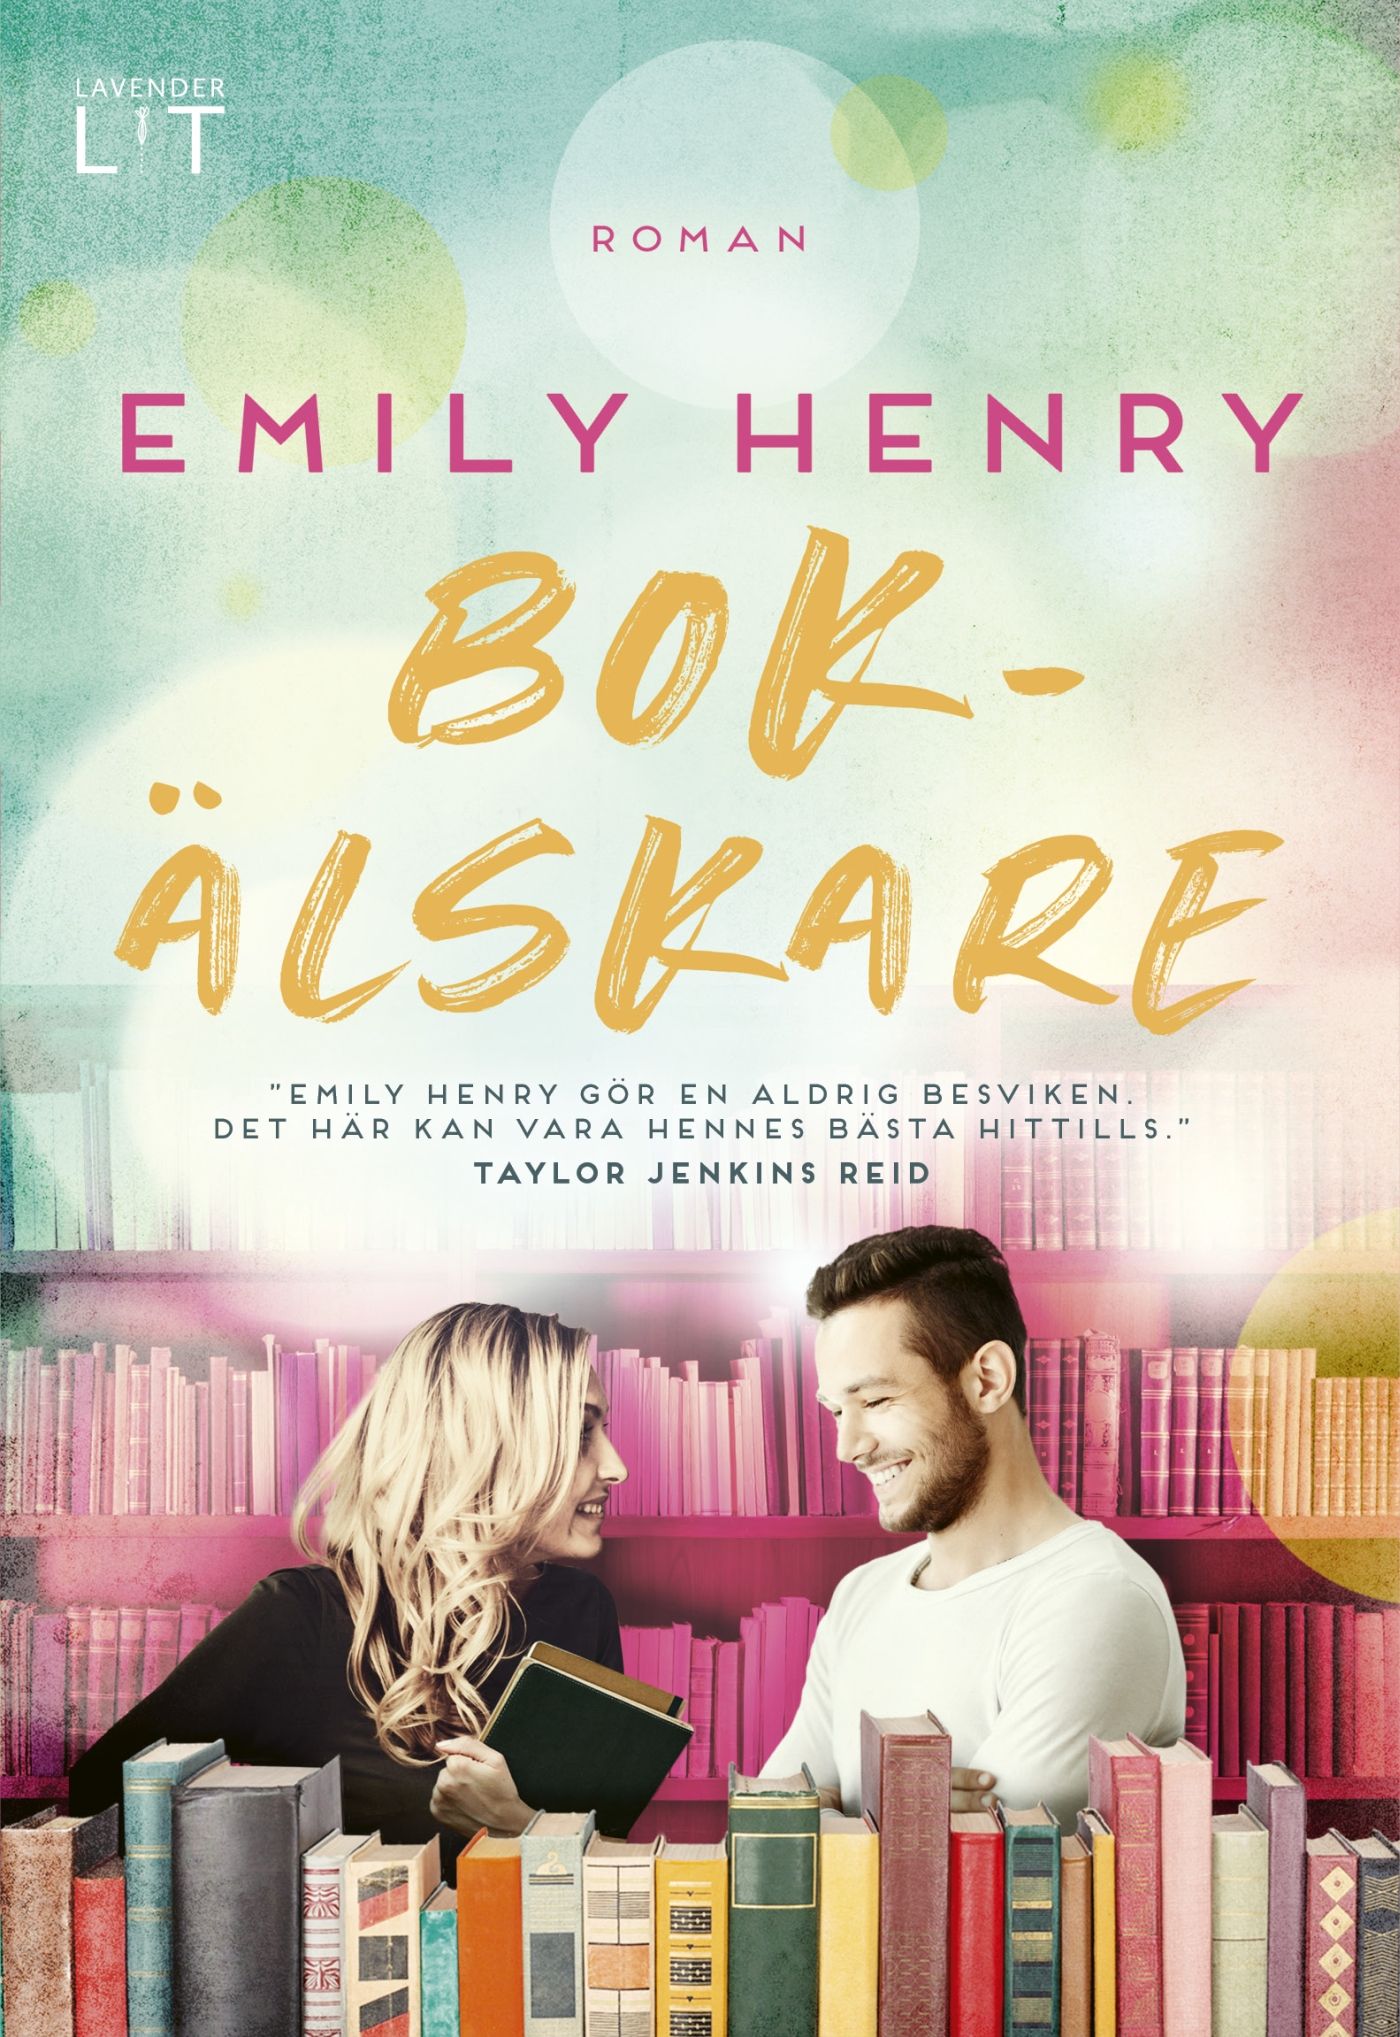 Bokälskare, e-bok av Emily Henry